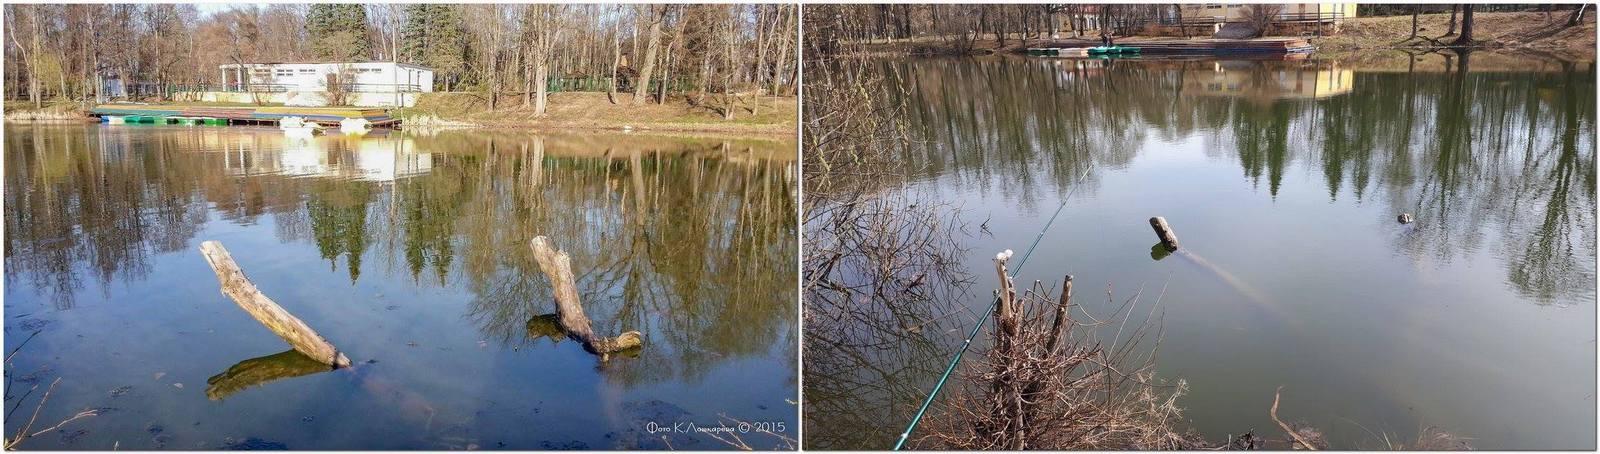 По этим фото хорошо видна разница в уровне воды в ершовском пруду в апреле 2015 и апреле 2017